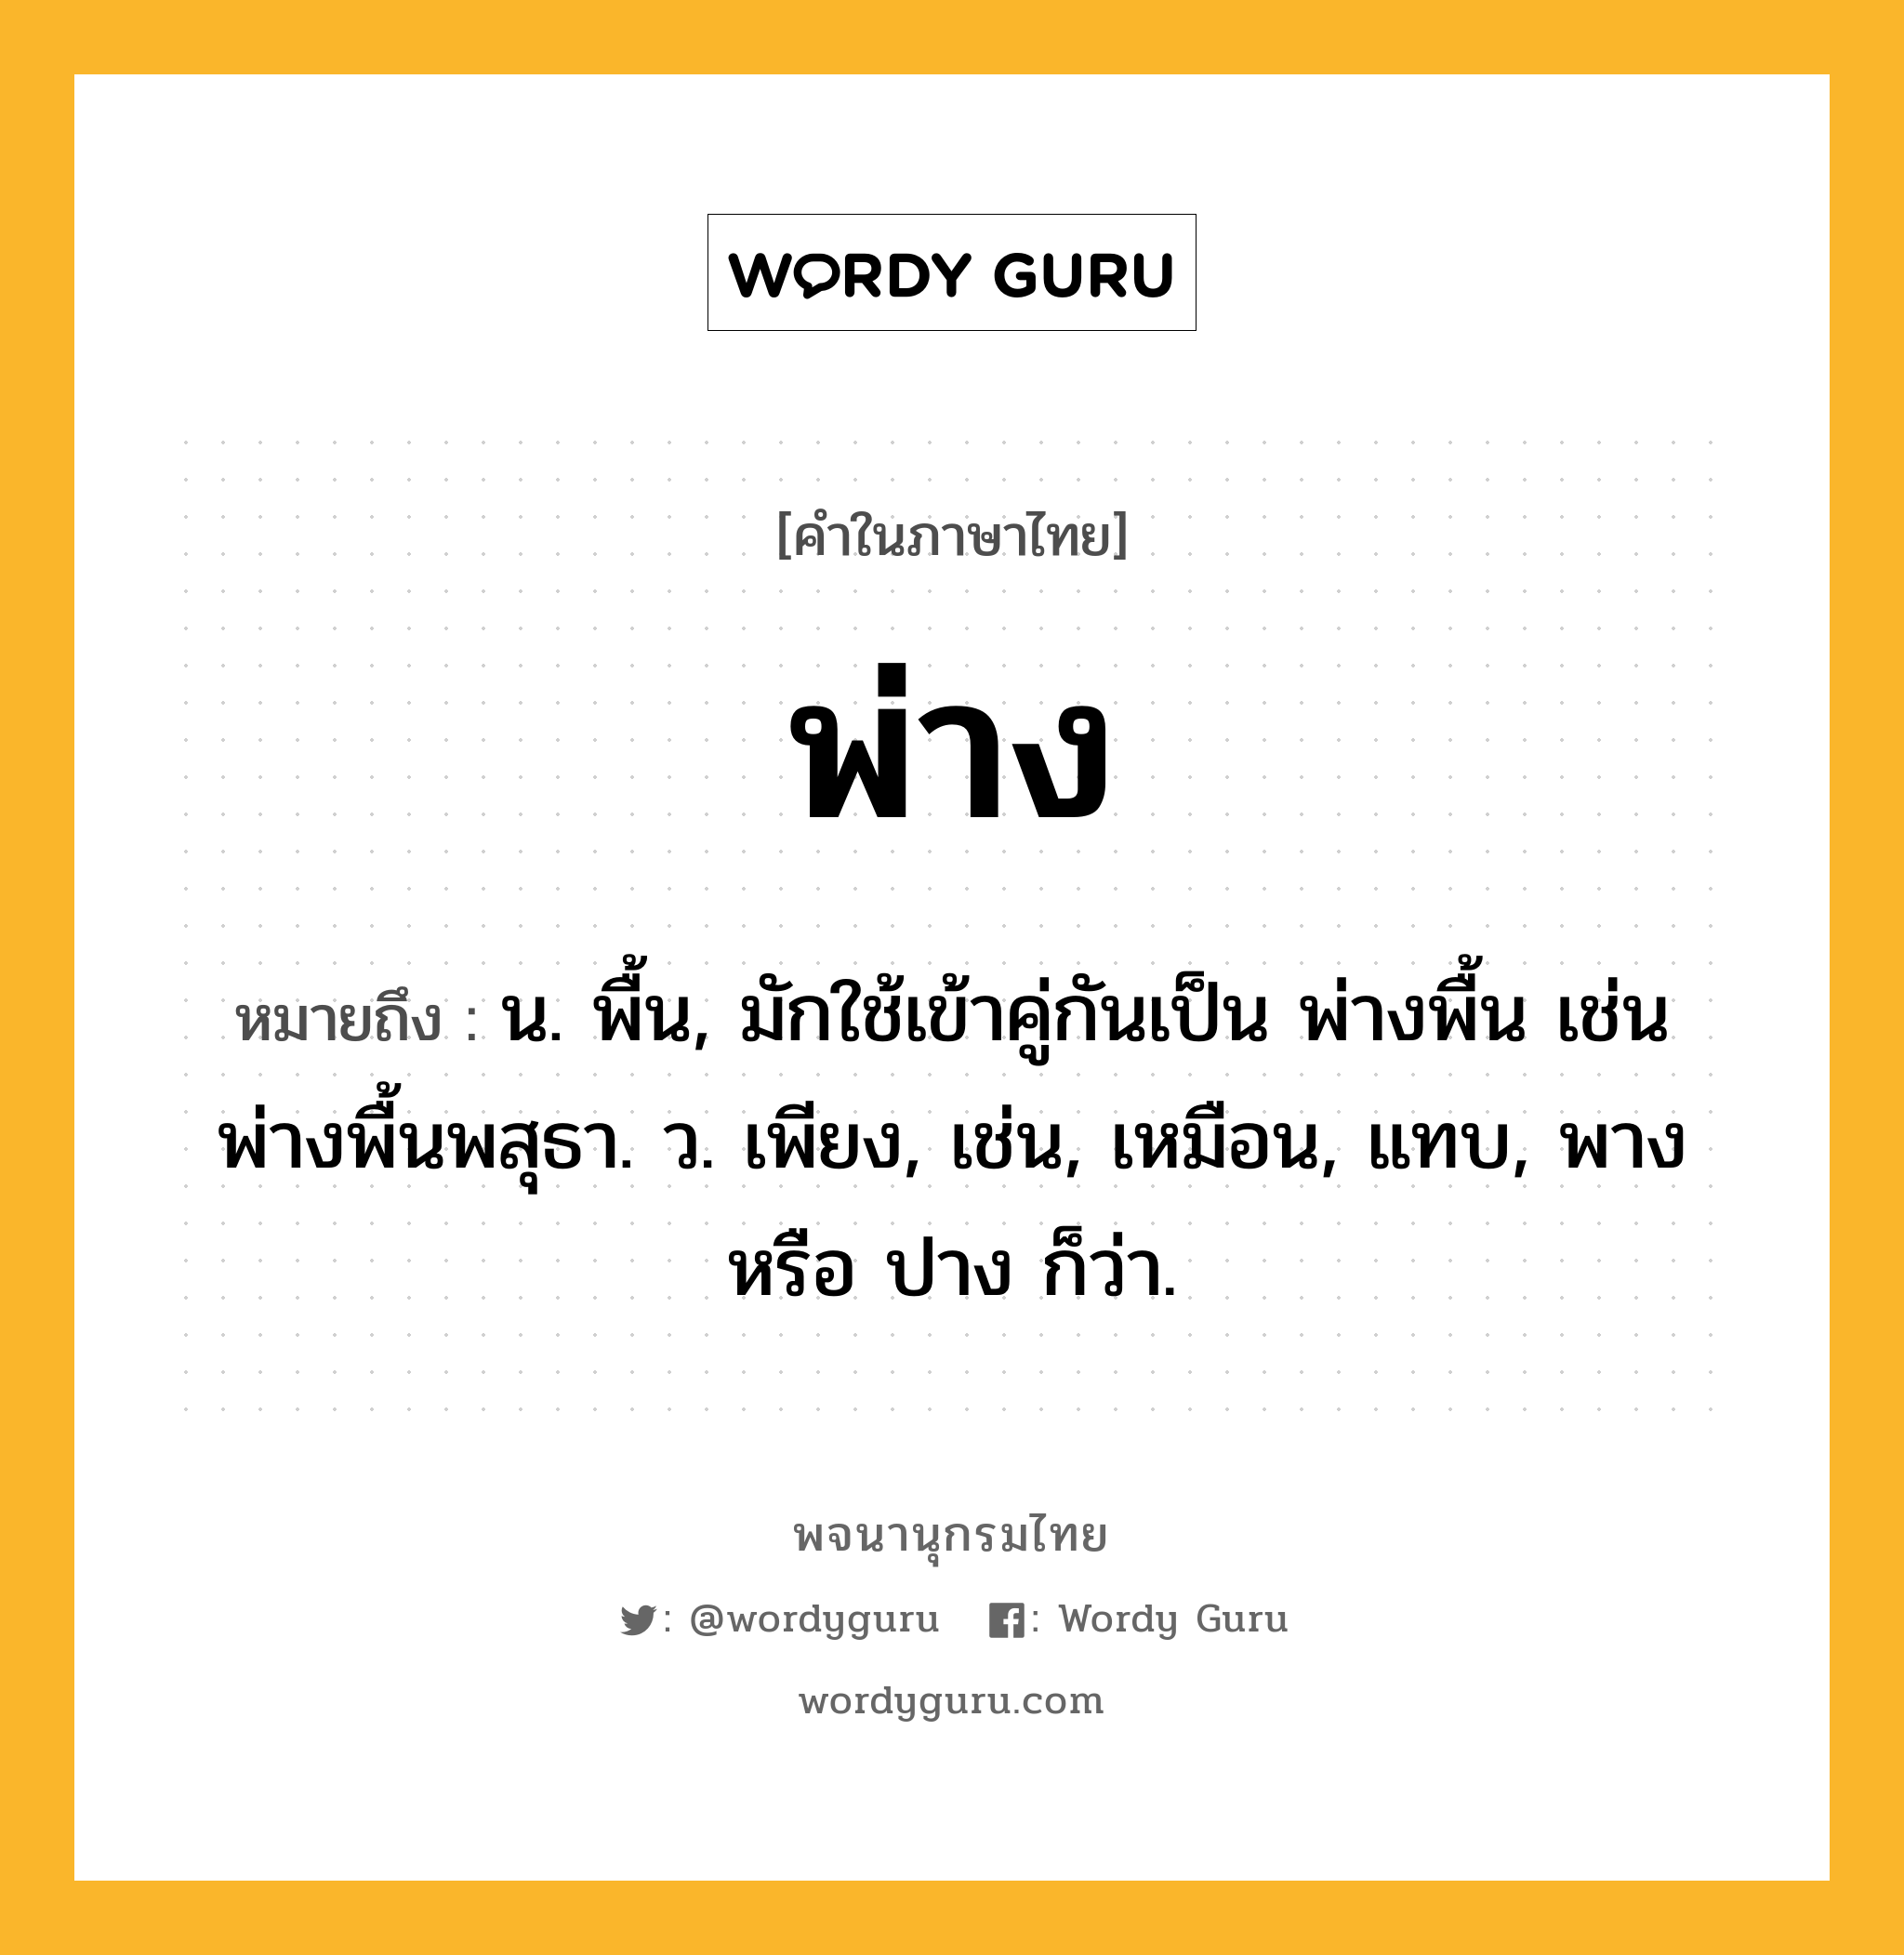 พ่าง หมายถึงอะไร?, คำในภาษาไทย พ่าง หมายถึง น. พื้น, มักใช้เข้าคู่กันเป็น พ่างพื้น เช่น พ่างพื้นพสุธา. ว. เพียง, เช่น, เหมือน, แทบ, พาง หรือ ปาง ก็ว่า.